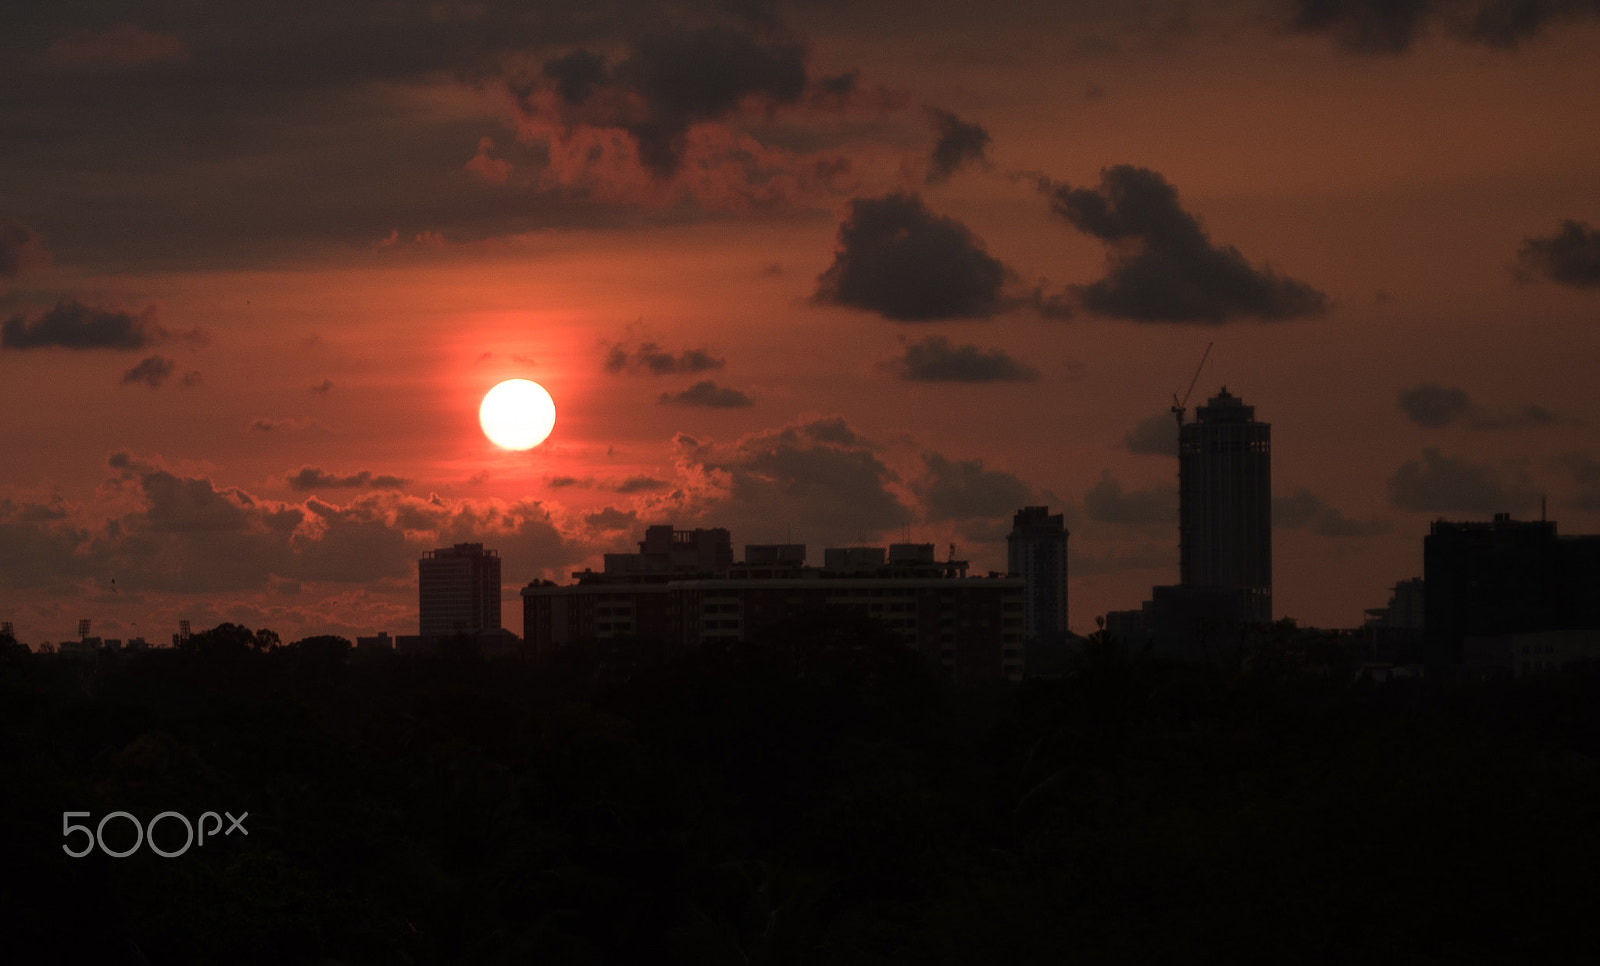 Nikon D750 + AF Zoom-Nikkor 28-80mm f/3.3-5.6G sample photo. Sunset over colombo photography